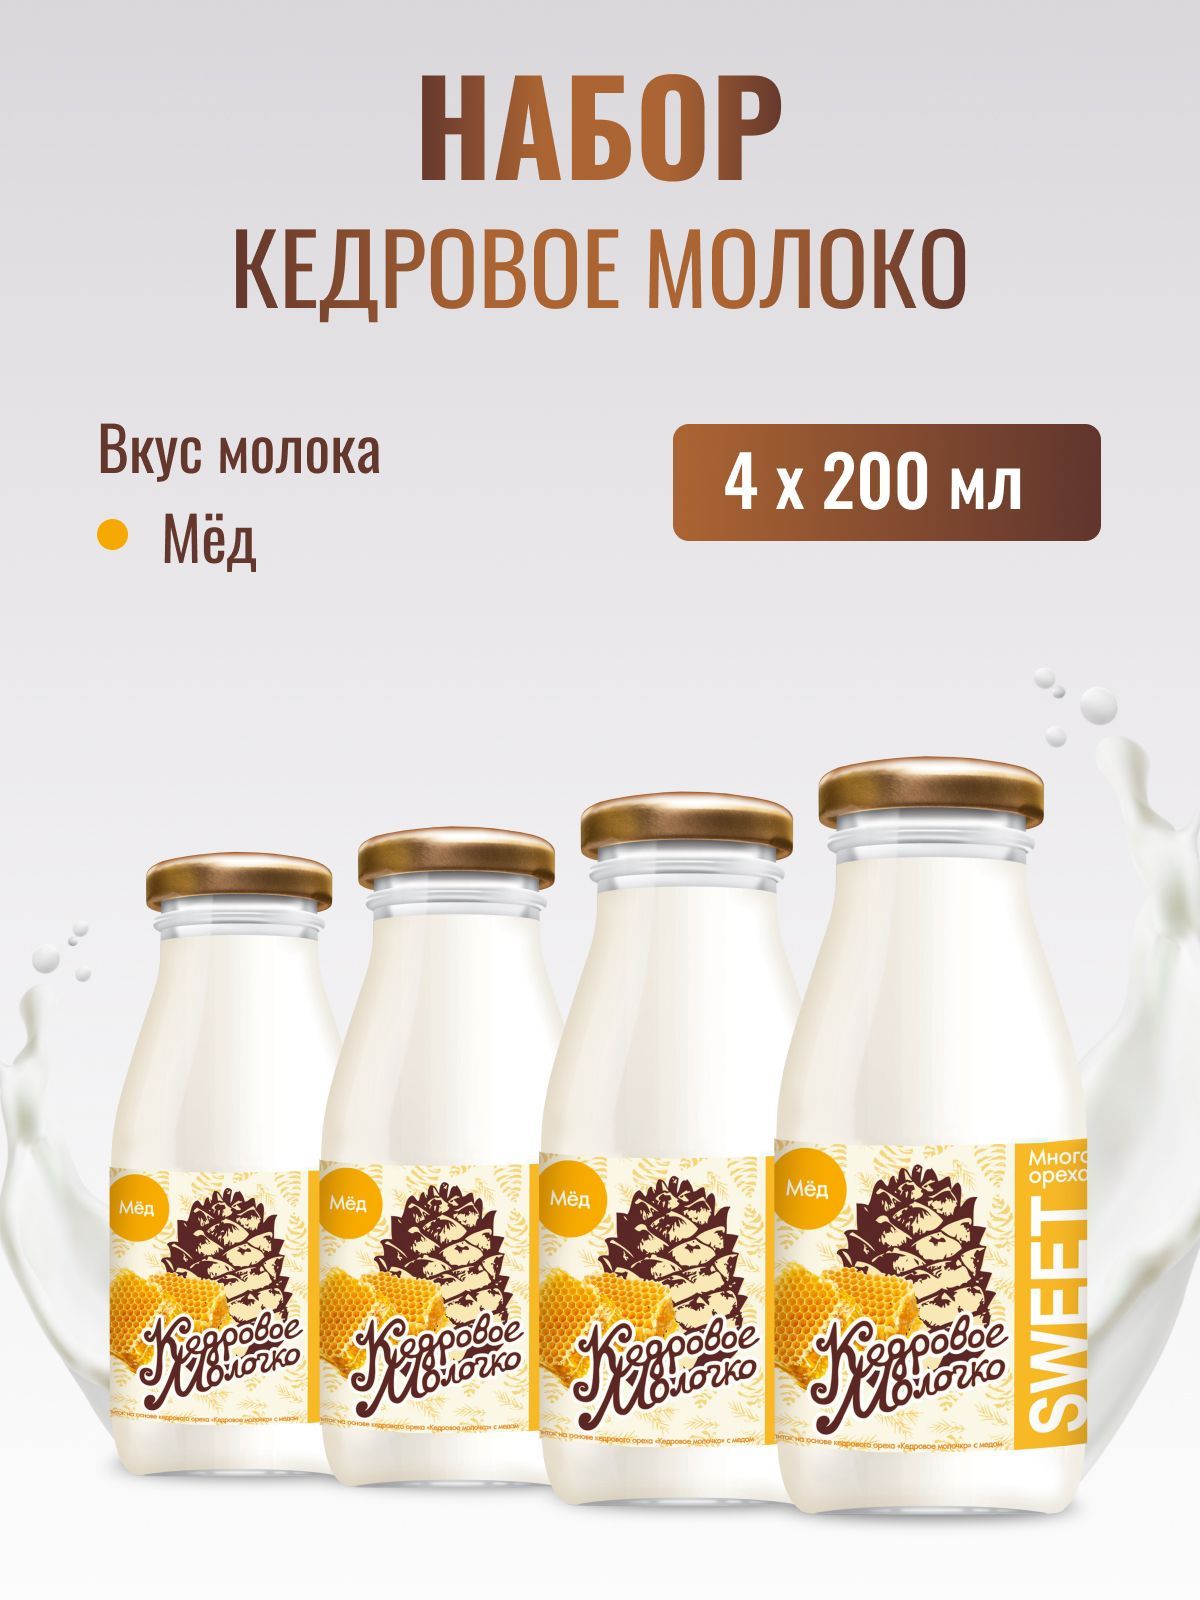 Кедровое молоко САВА с медом растительный напиток набор, 4 шт по 200 мл